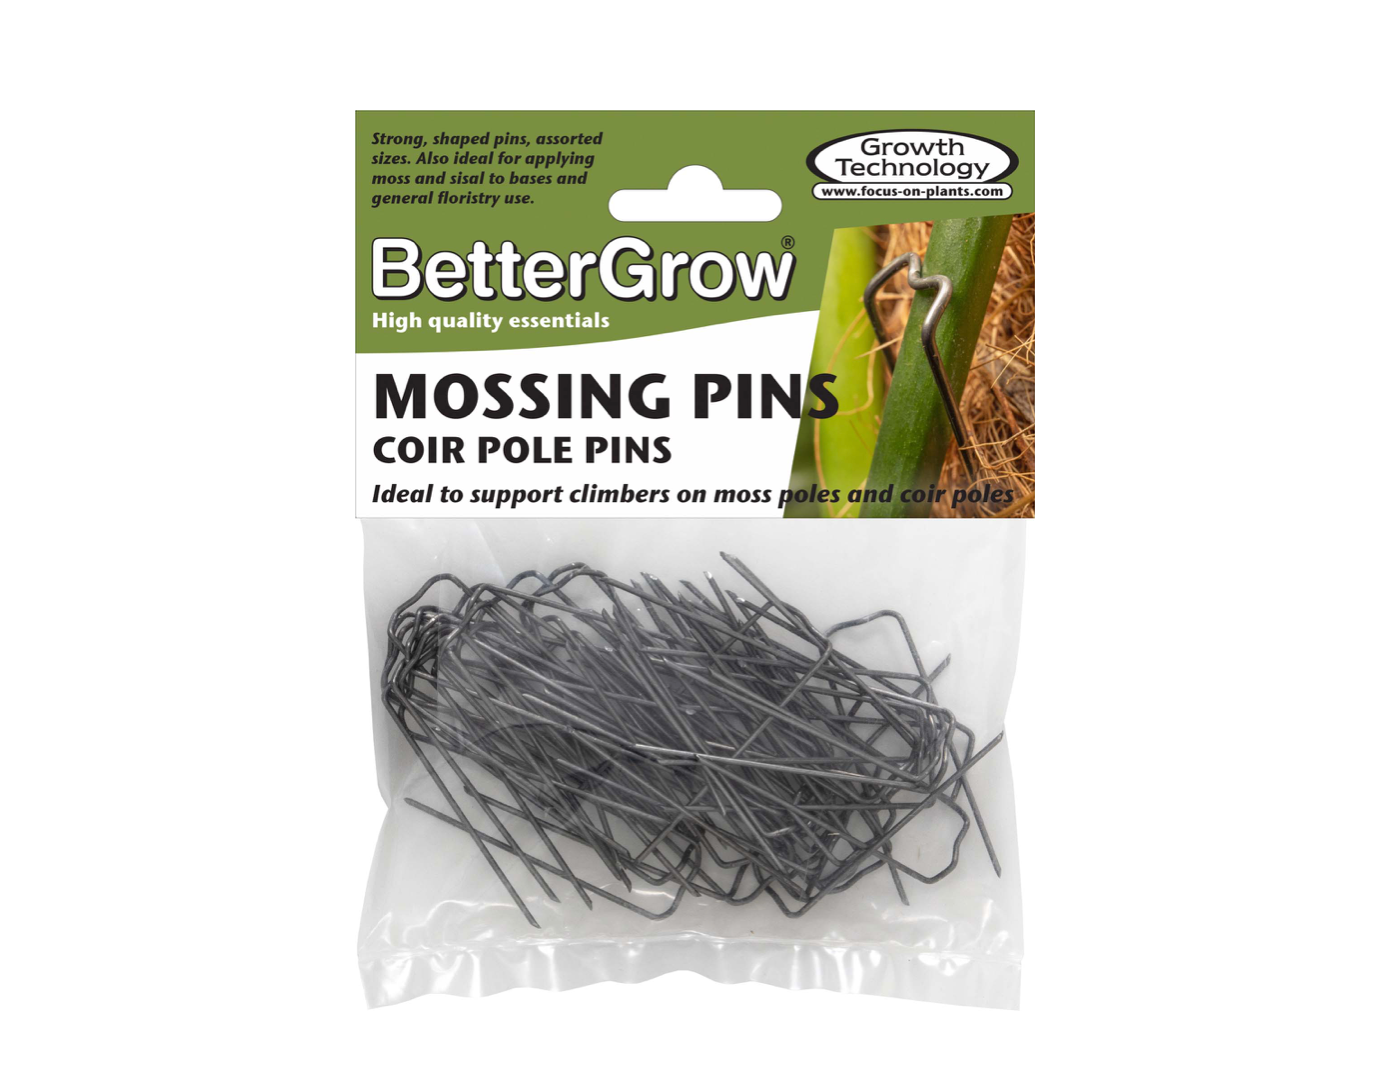 Mossing Pins (Coir Pole Pins)